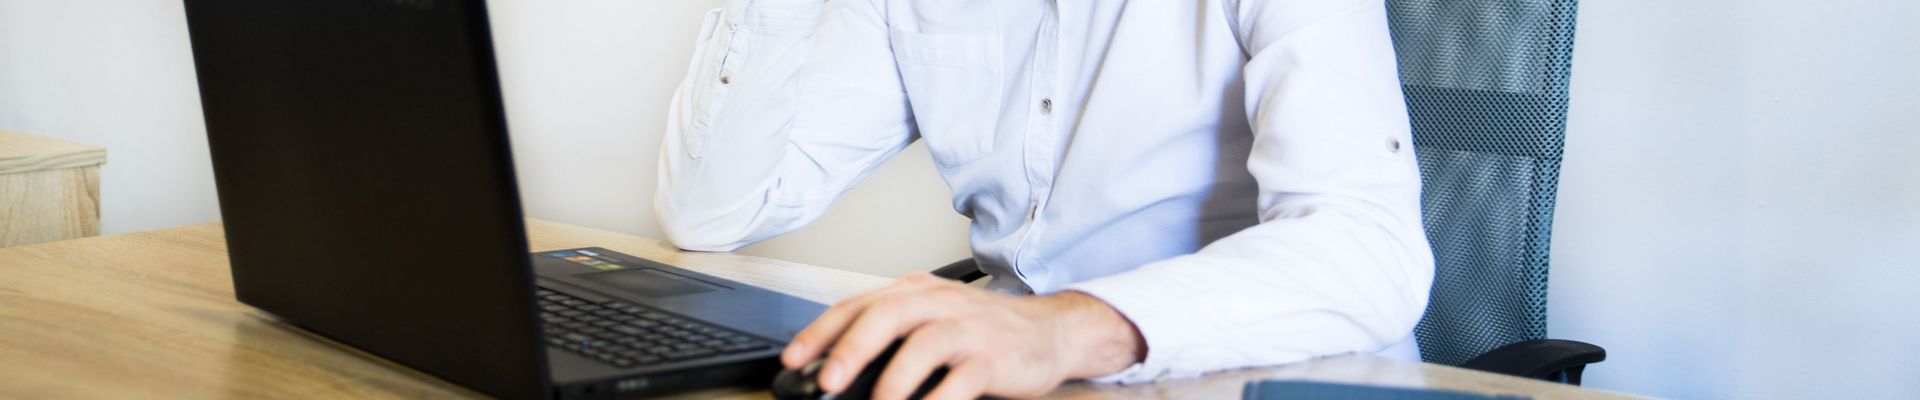 Ein Mann sitzt an einem Schreibtisch, telefoniert und arbeitet an seinem Laptop.